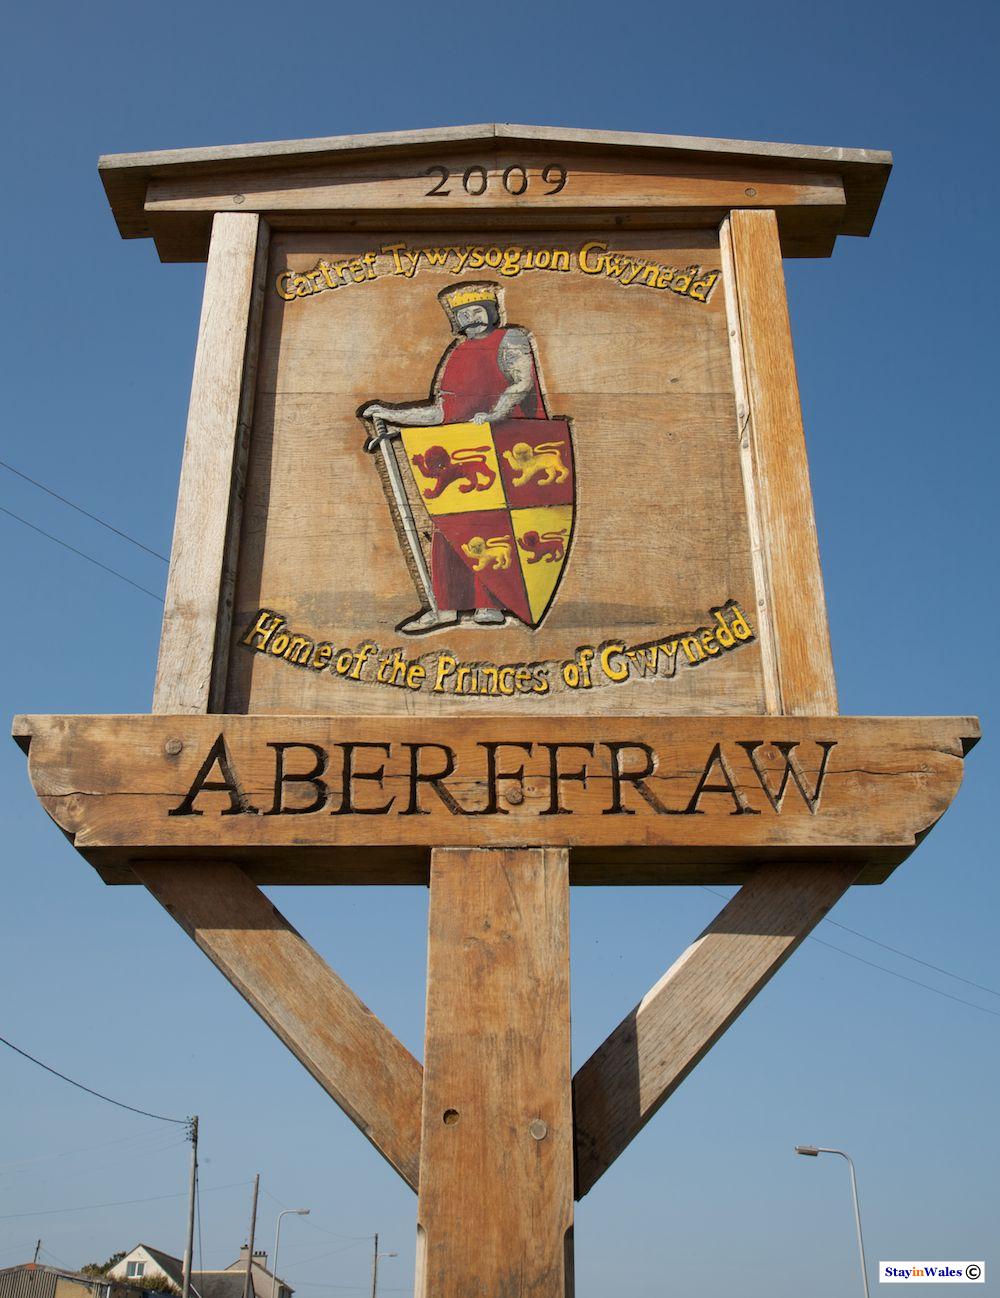 Aberffraw, home to the Princes of Gwynedd